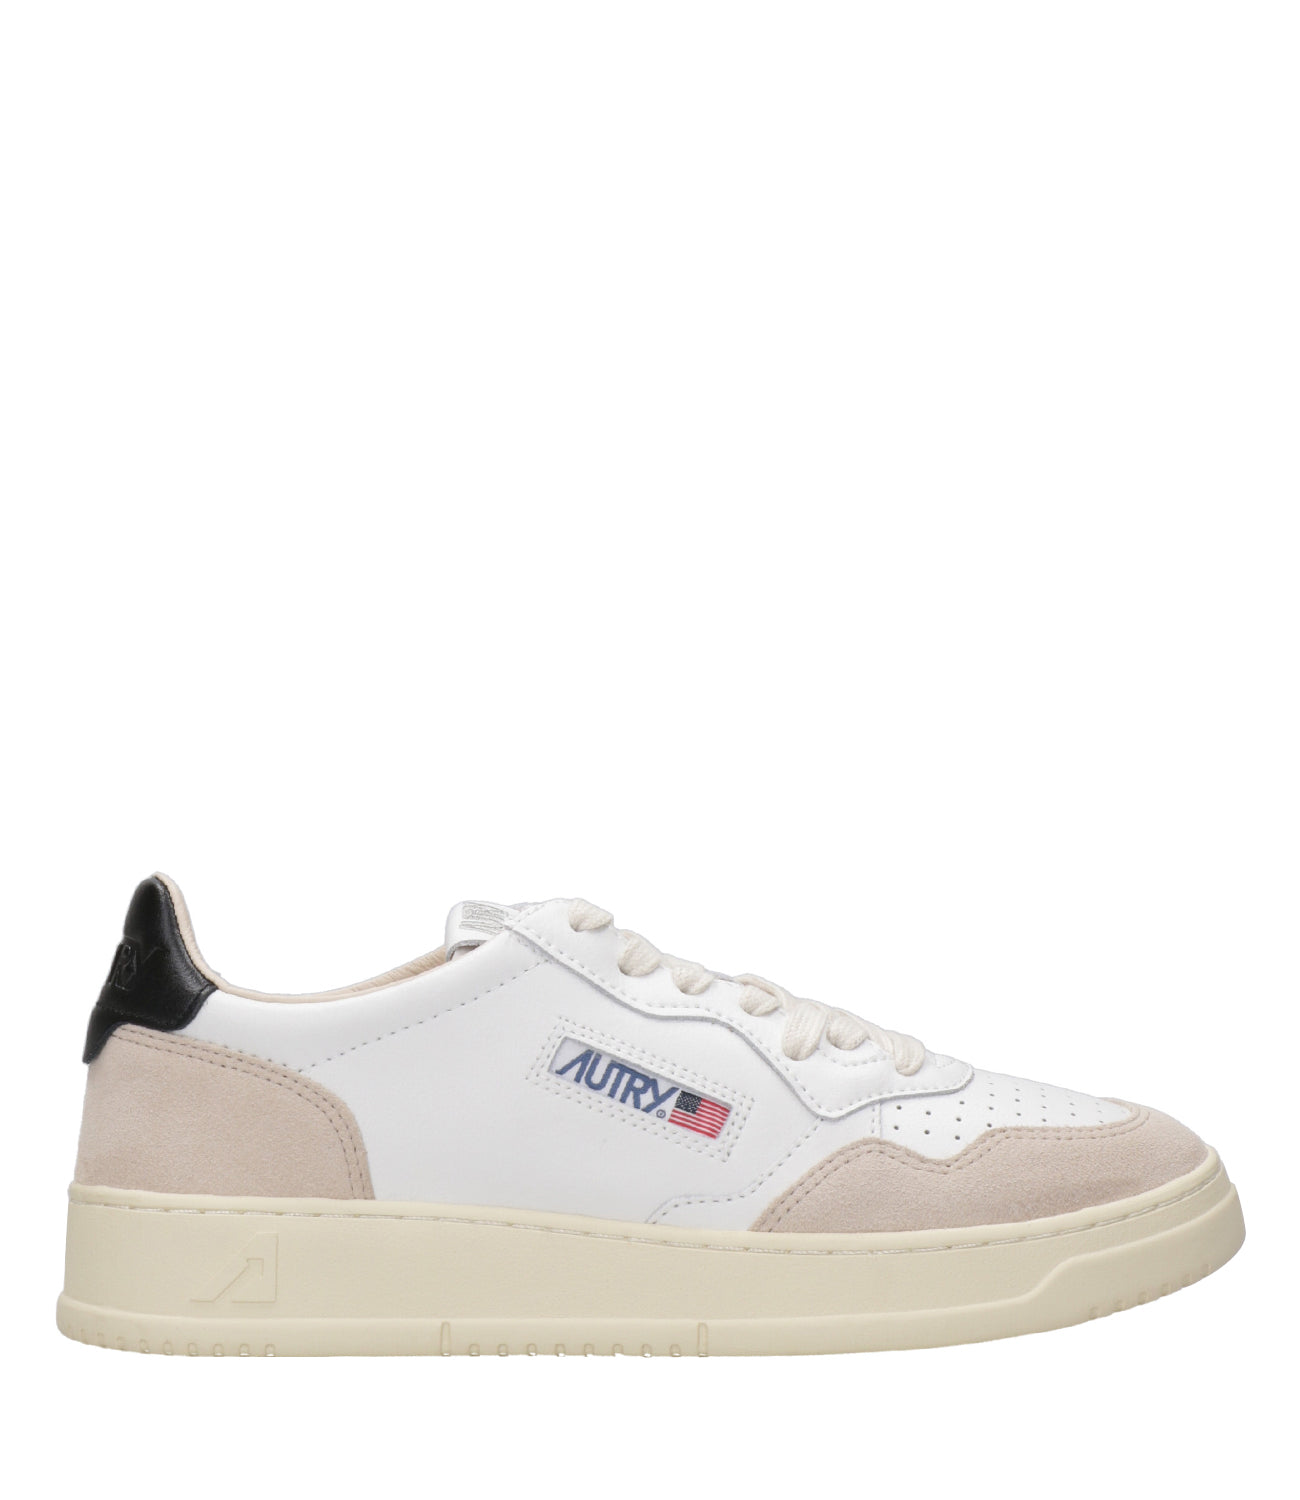 Autry | Sneakers Bianco e Nero